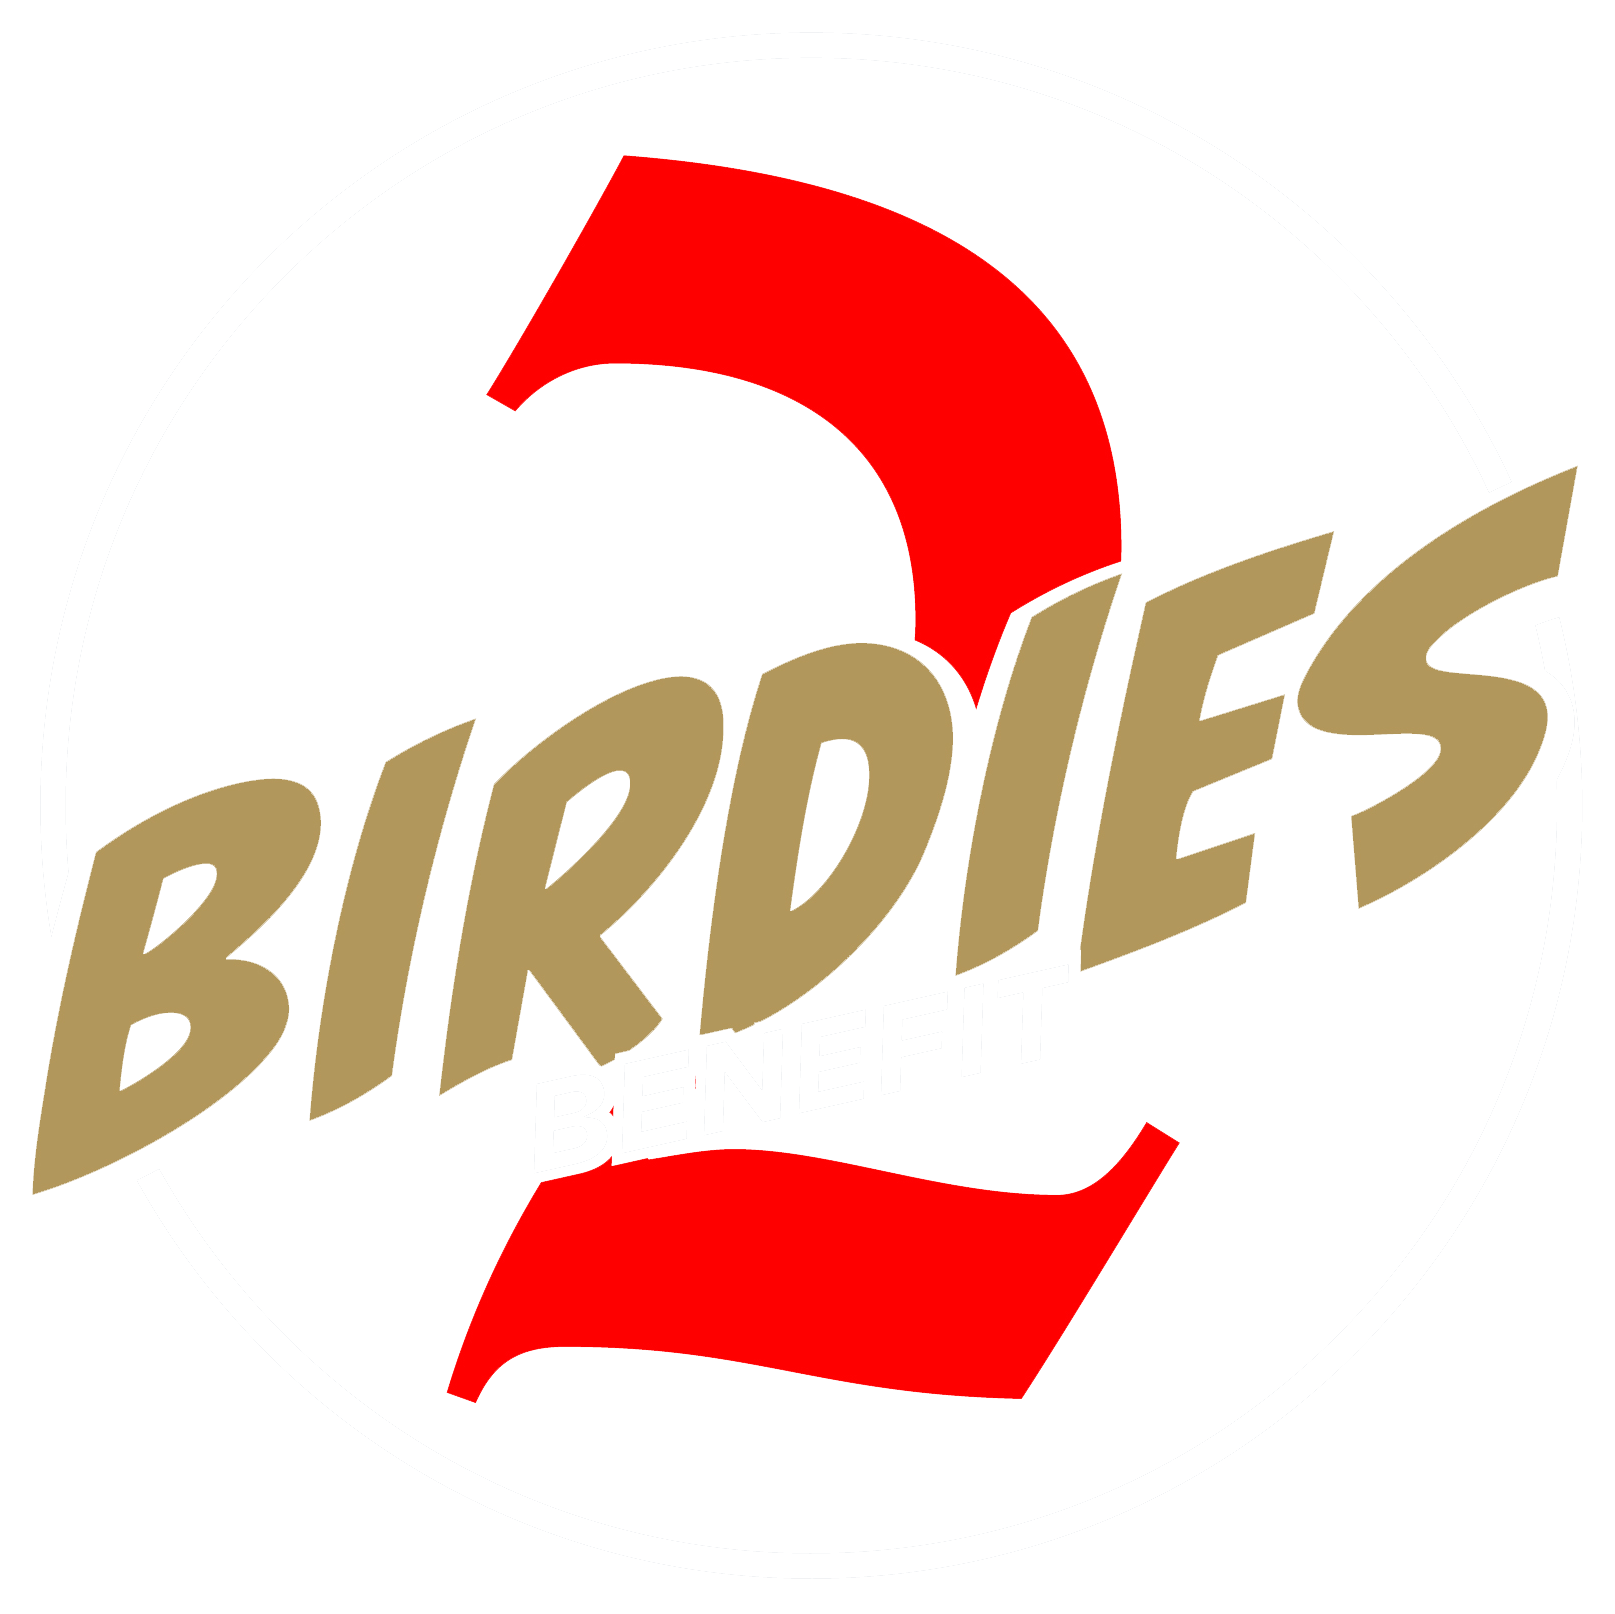 Birdies 2 Benefit